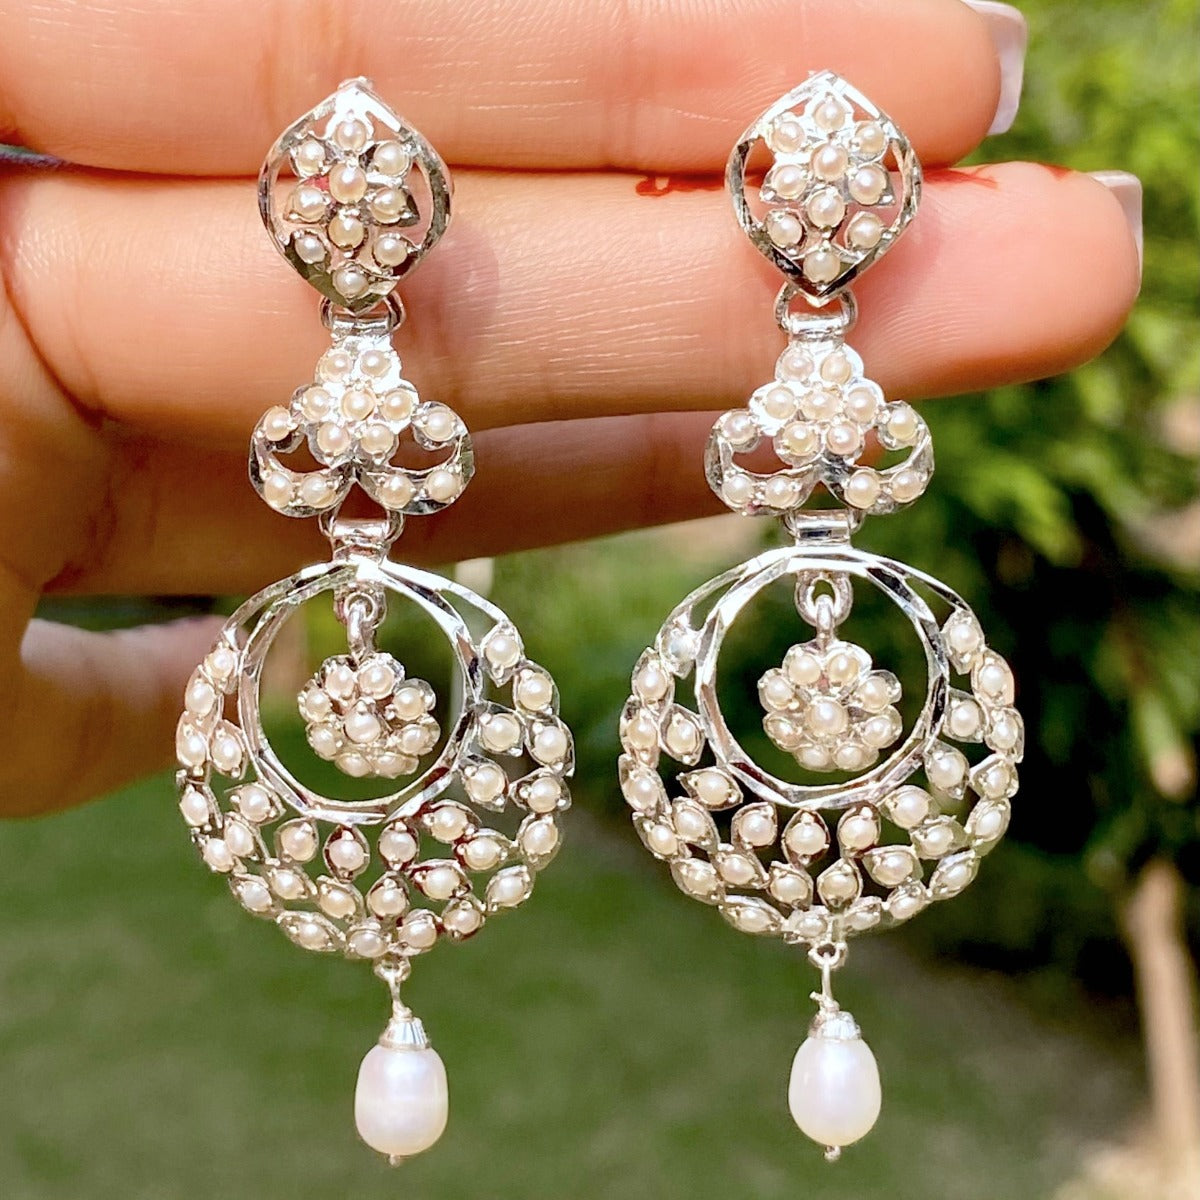 buy white silver earrings online